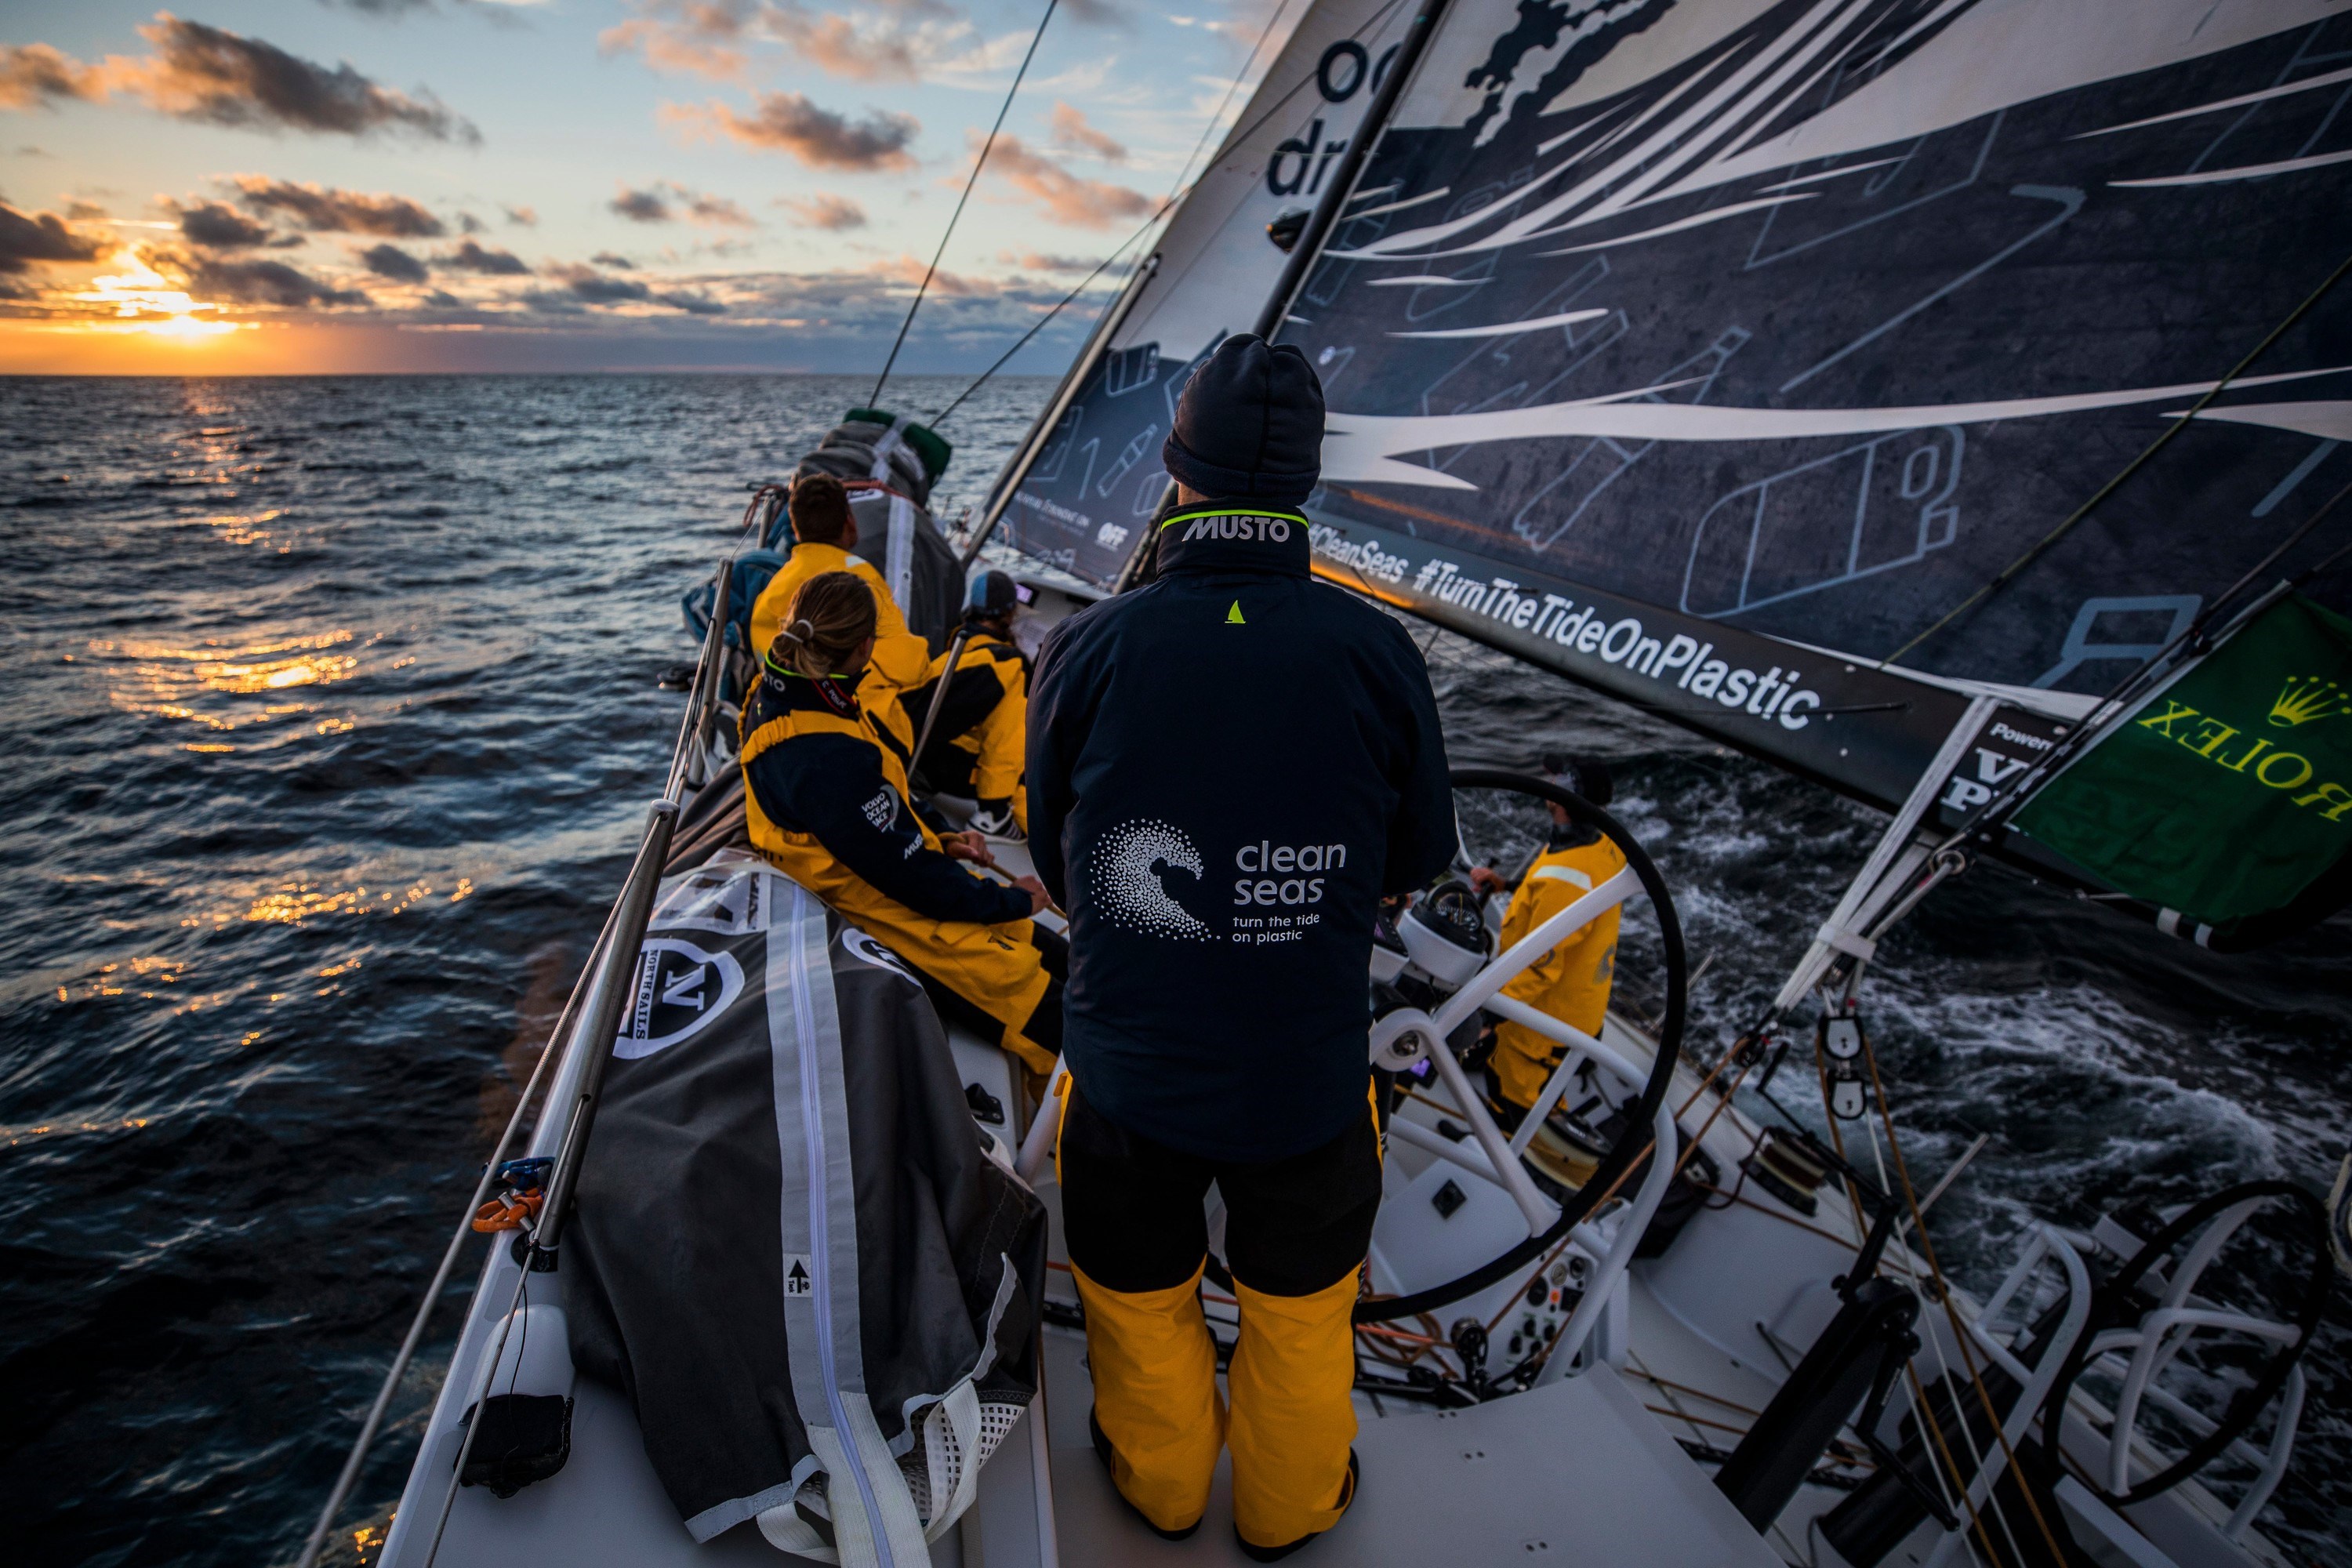 Фото: пресс-служба Volvo Ocean Race